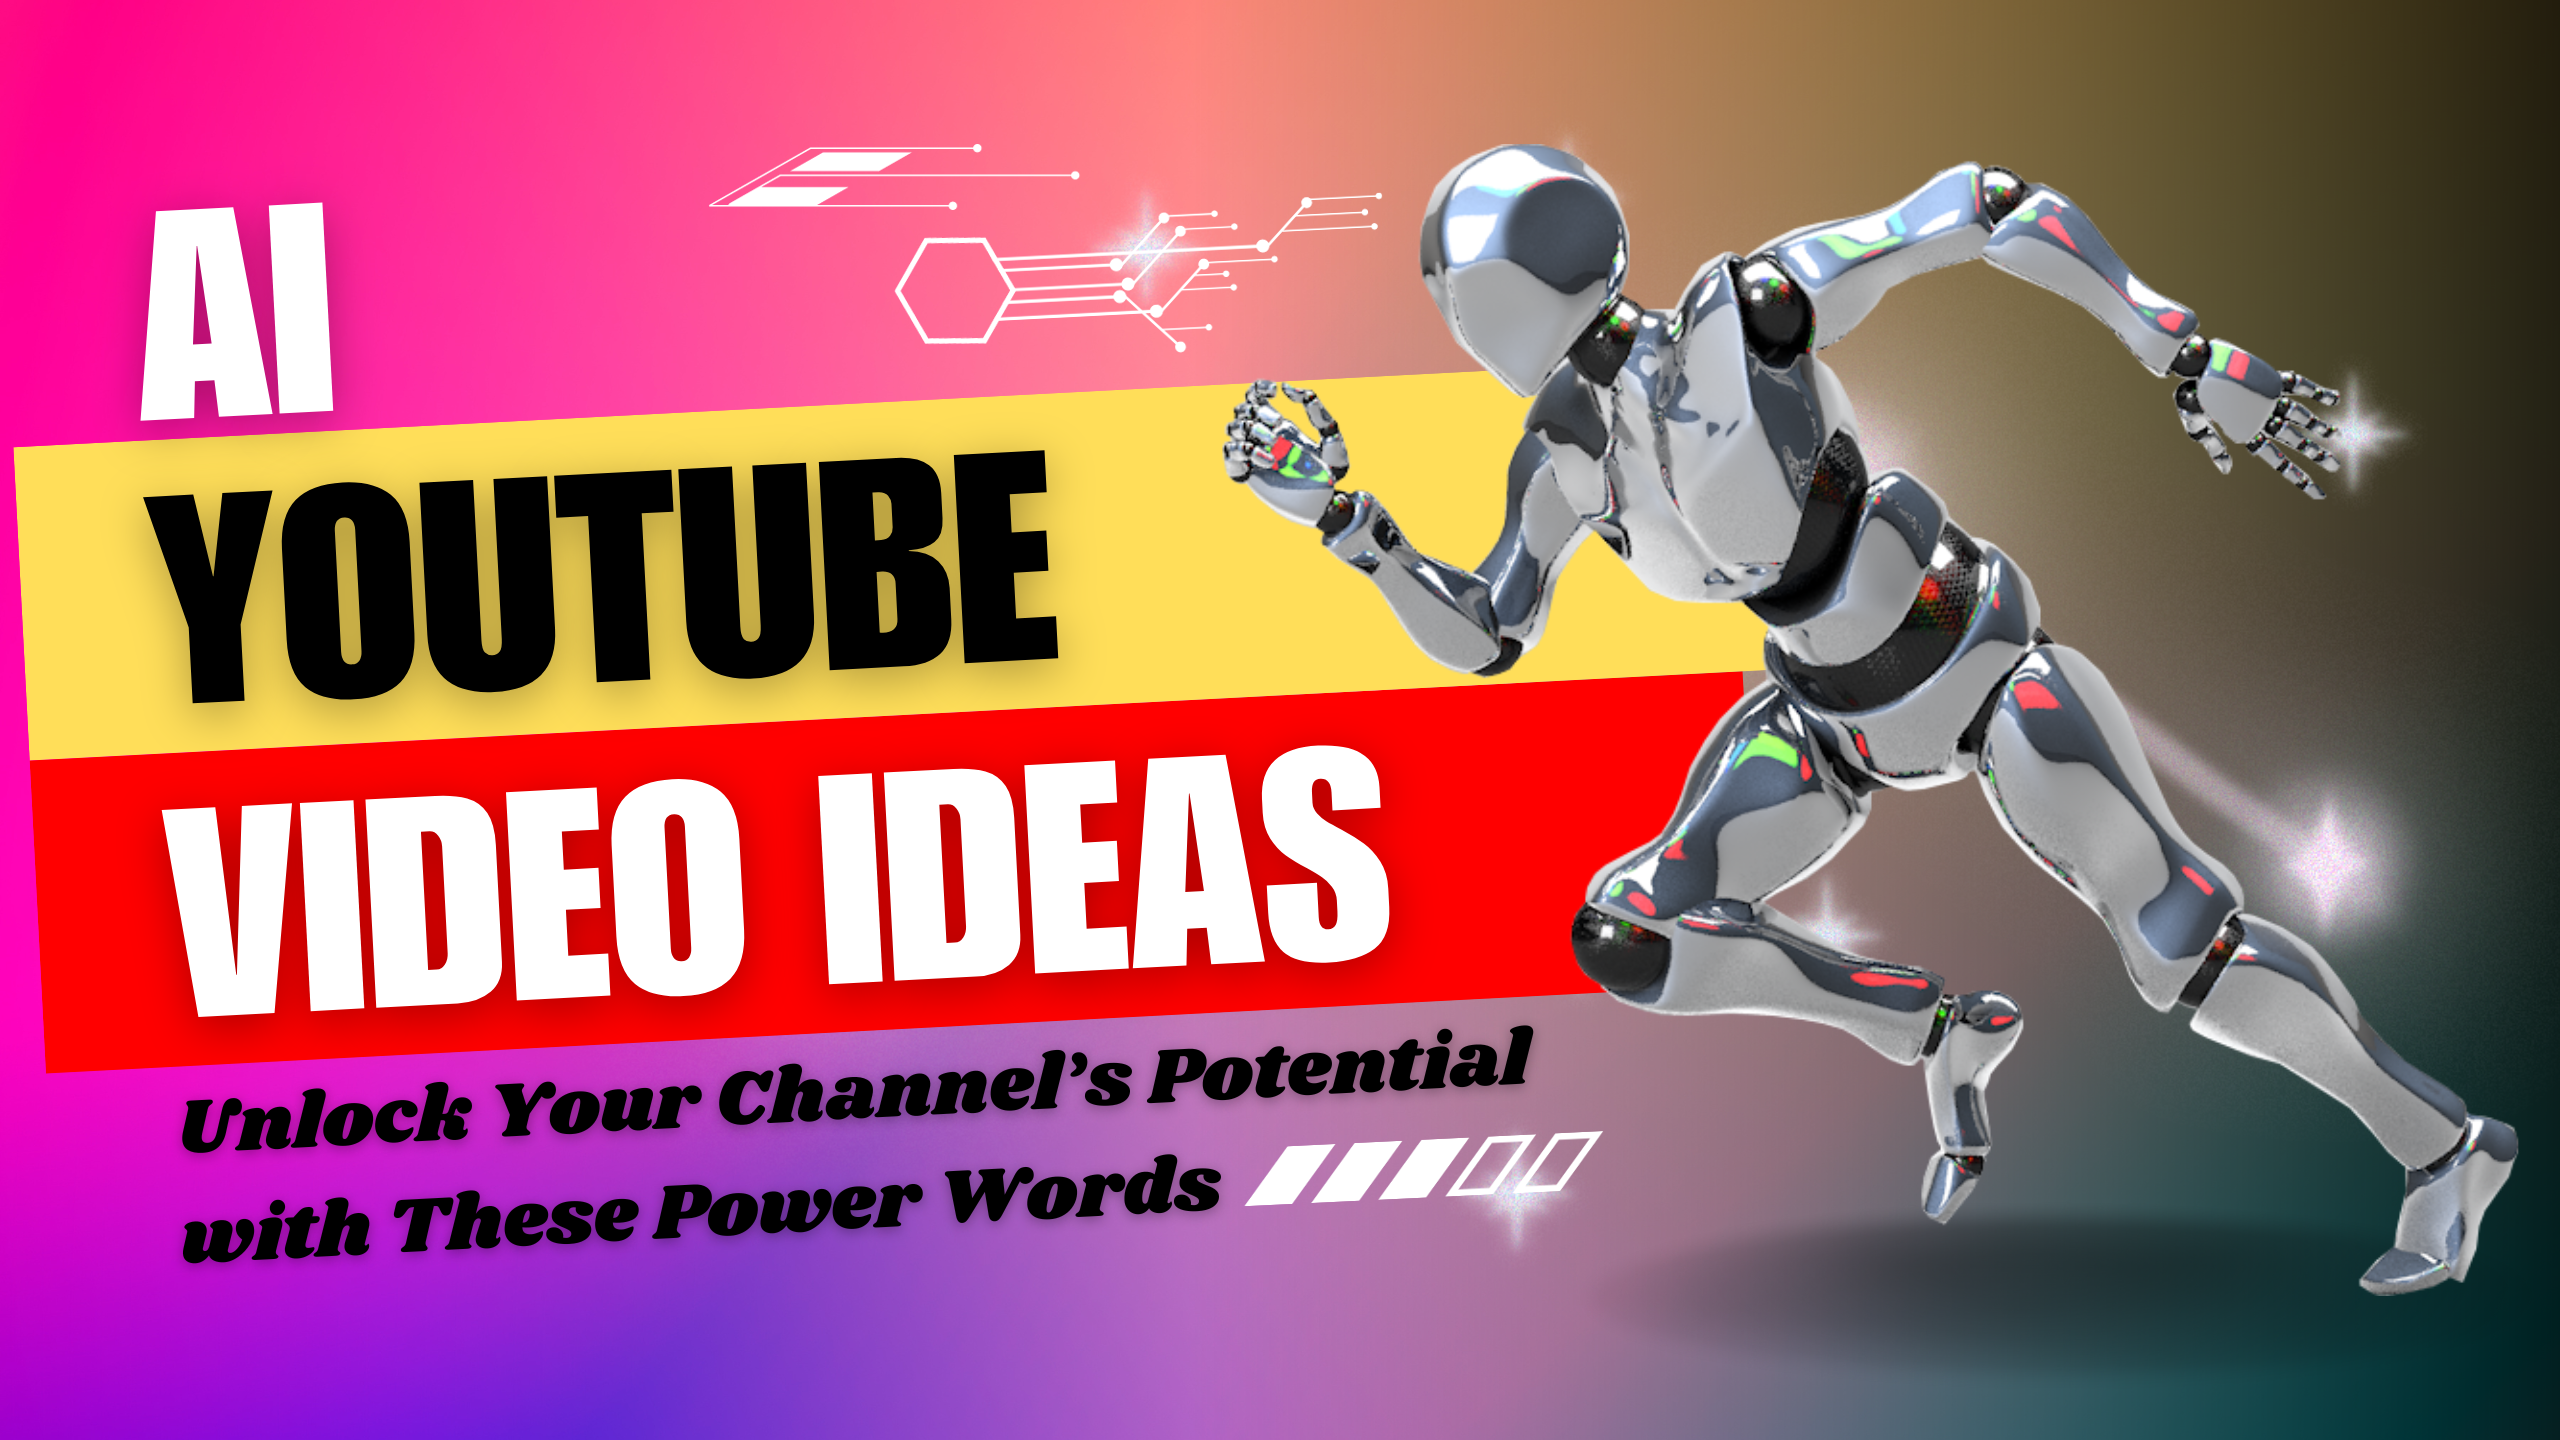 AI YouTube Video Ideas